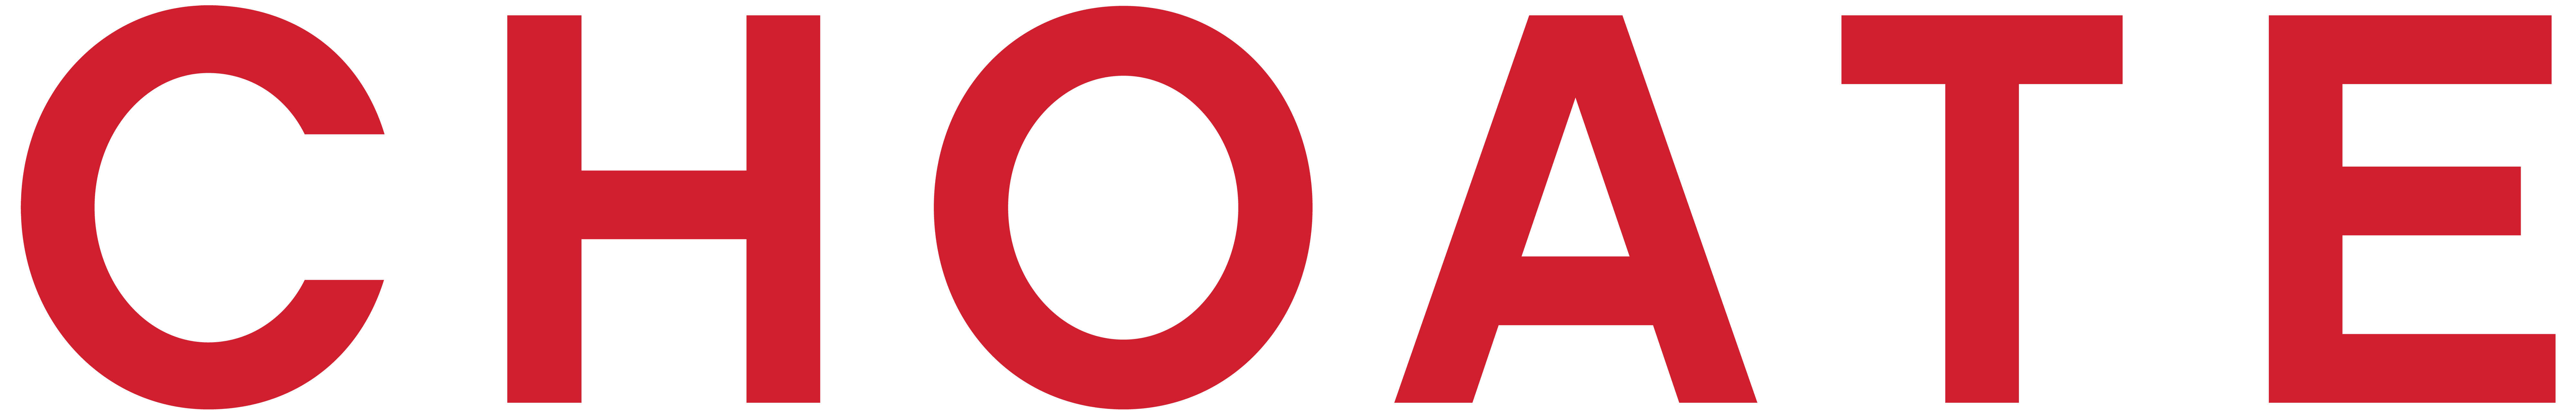 CHOATE_logo